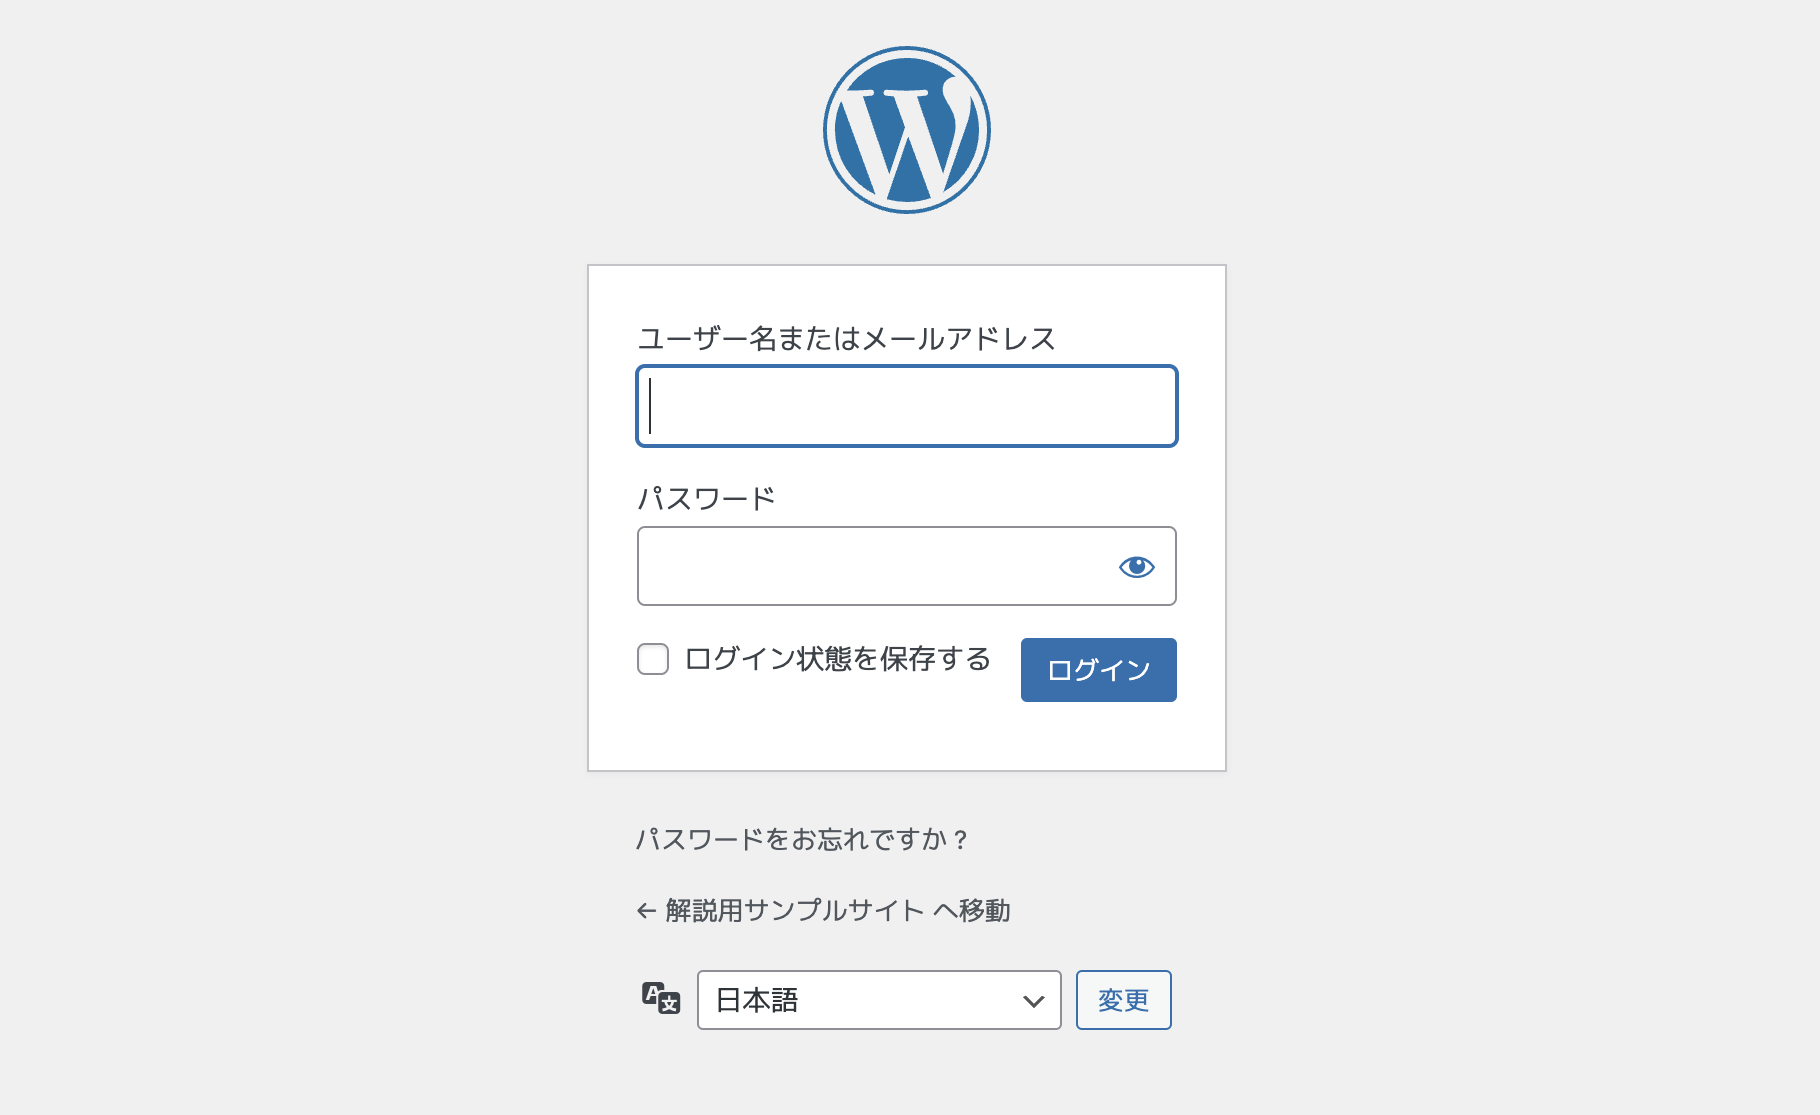 WordPressの管理画面へログインし、「設定」>「一般設定」をクリックする